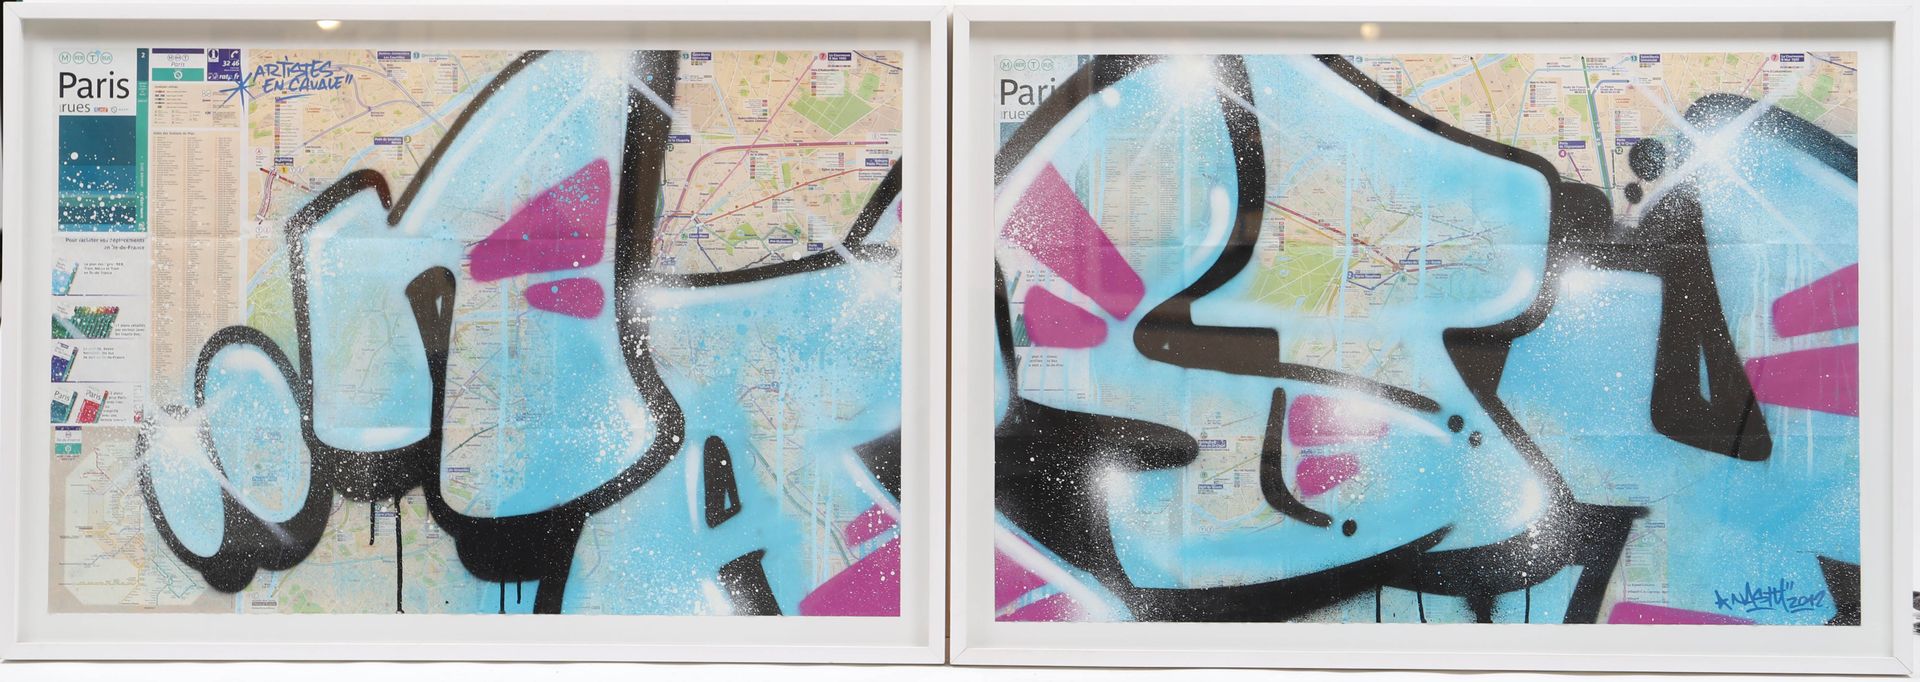 Null Nasty (nacido en 1975) 
Artista callejero francés 
Etiqueta sobre planos de&hellip;